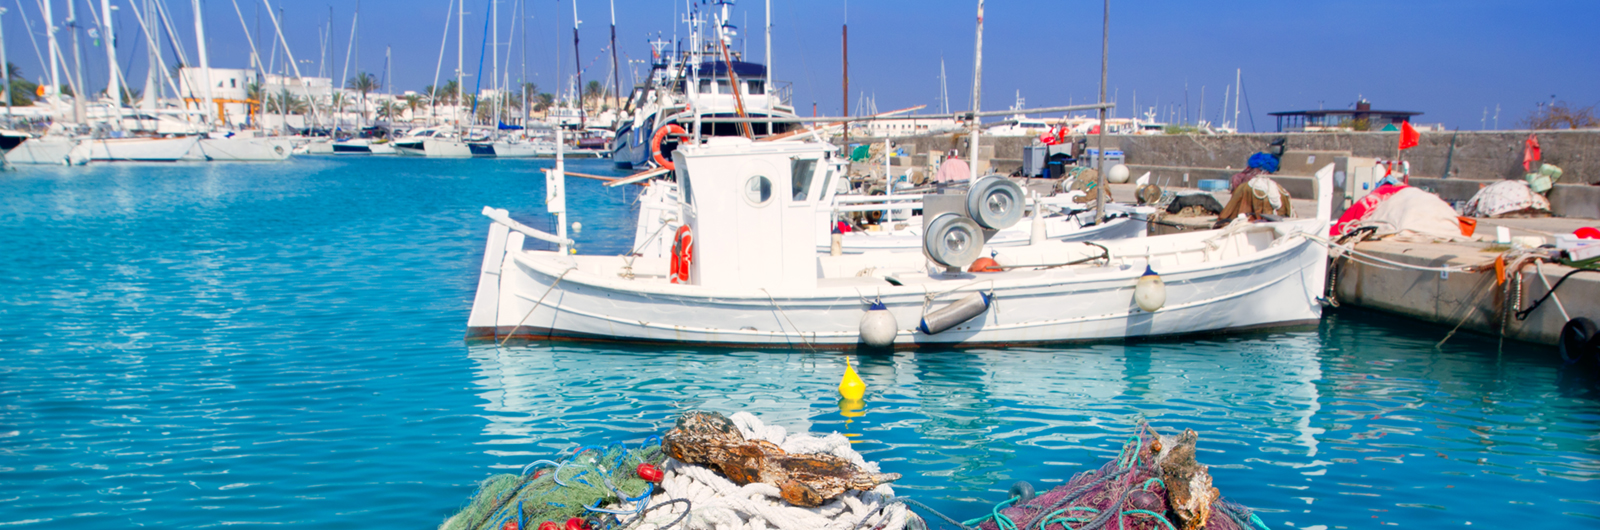 Insel Formentera - Urlaub und Meer